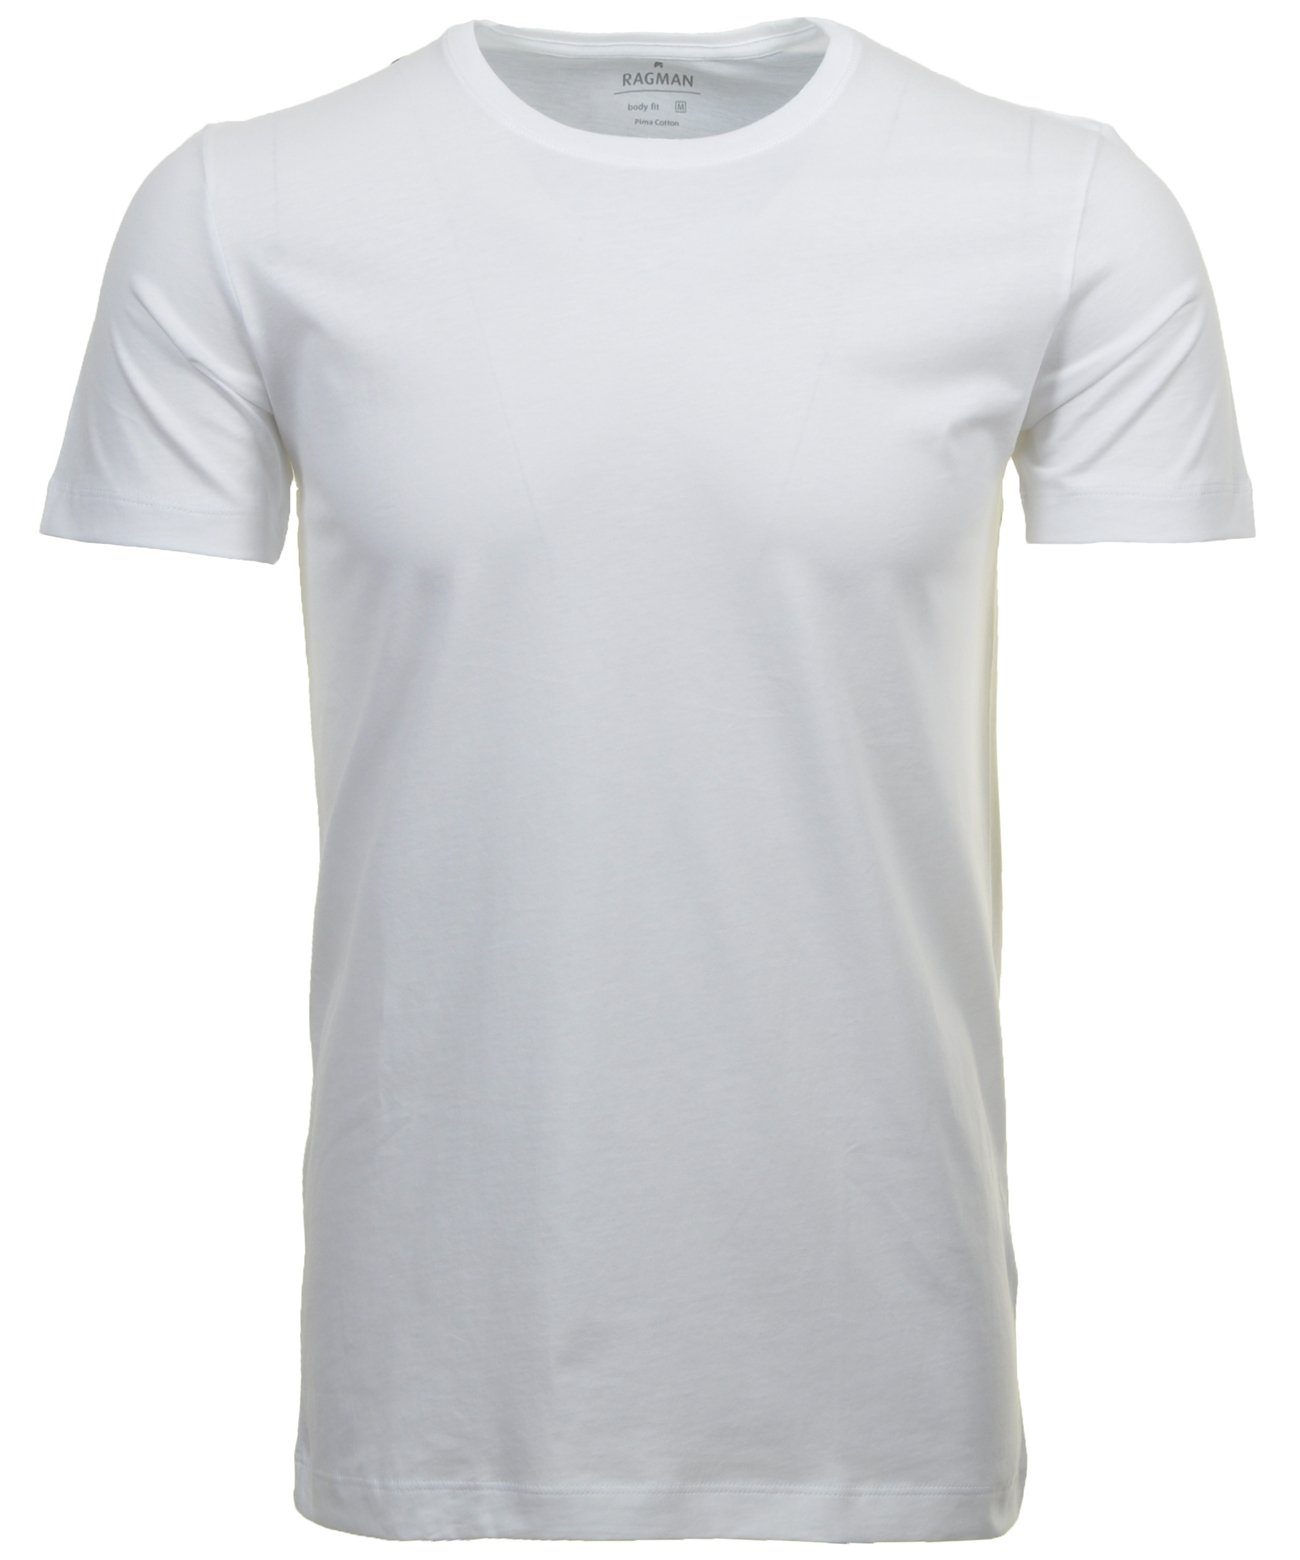 Weiss RAGMAN (Packung) T-Shirt